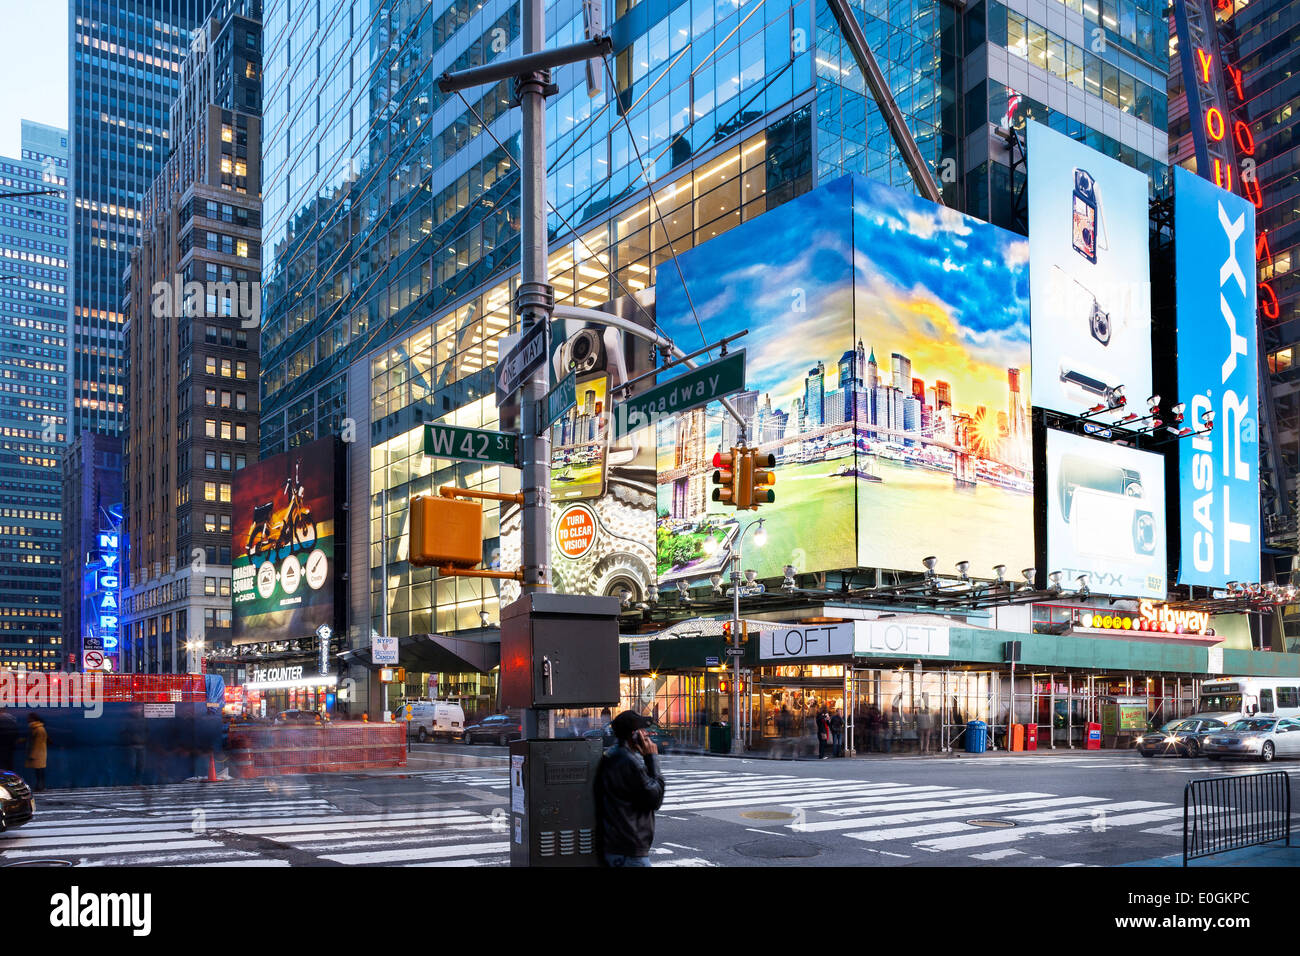 Times Square la nuit, Broadway, 42ème rue, le centre-ville de Manhattan, New York City, New York, en Amérique du Nord, Etats-Unis Banque D'Images